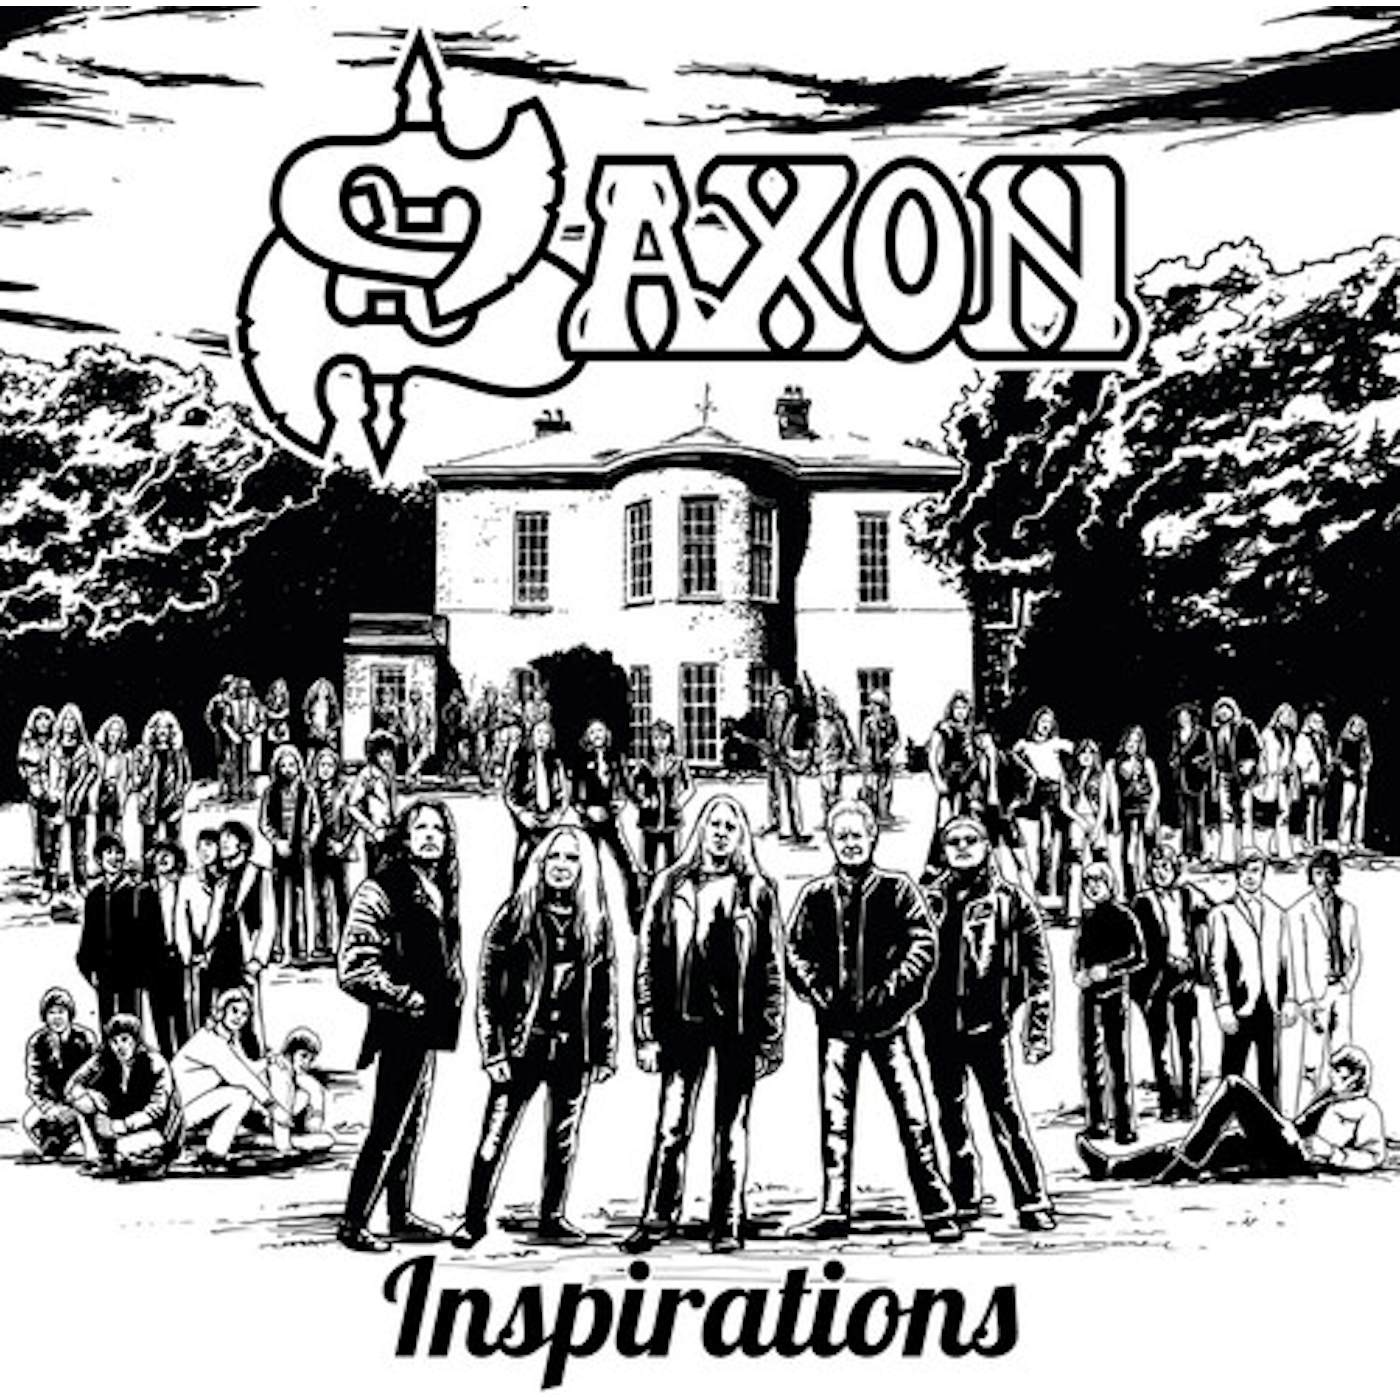 Saxon Inspirations Vinyl Record